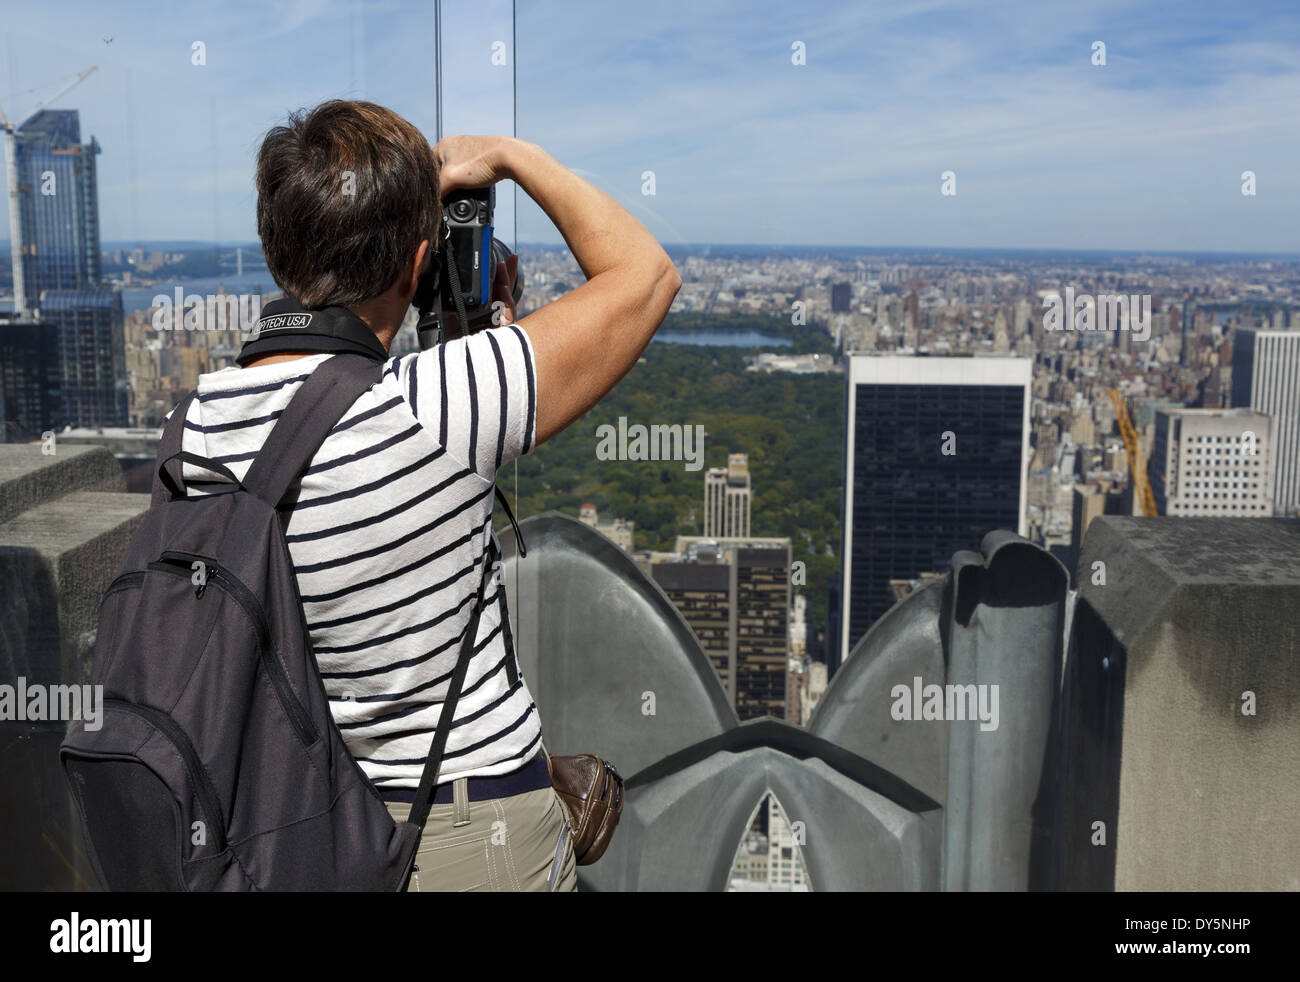 Femme prenant une photo au-dessus de Central Park depuis le Rockefeller Center observation Deck New York, États-Unis Banque D'Images